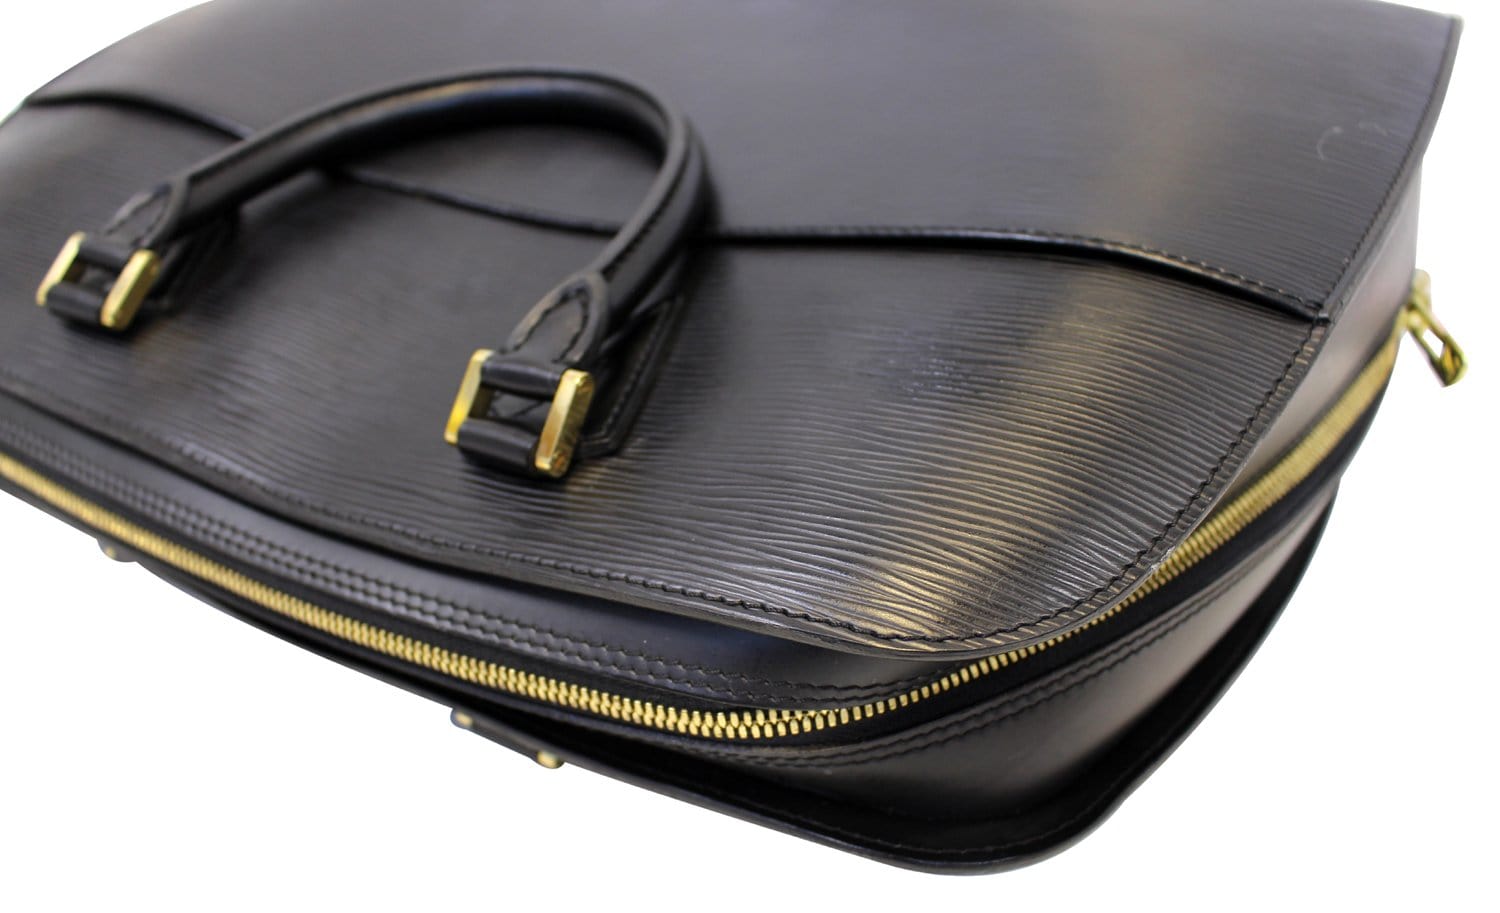 Vintage Louis Vuitton Black Epi Leather Sorbonne Briefcase Bag TH0062 –  KimmieBBags LLC